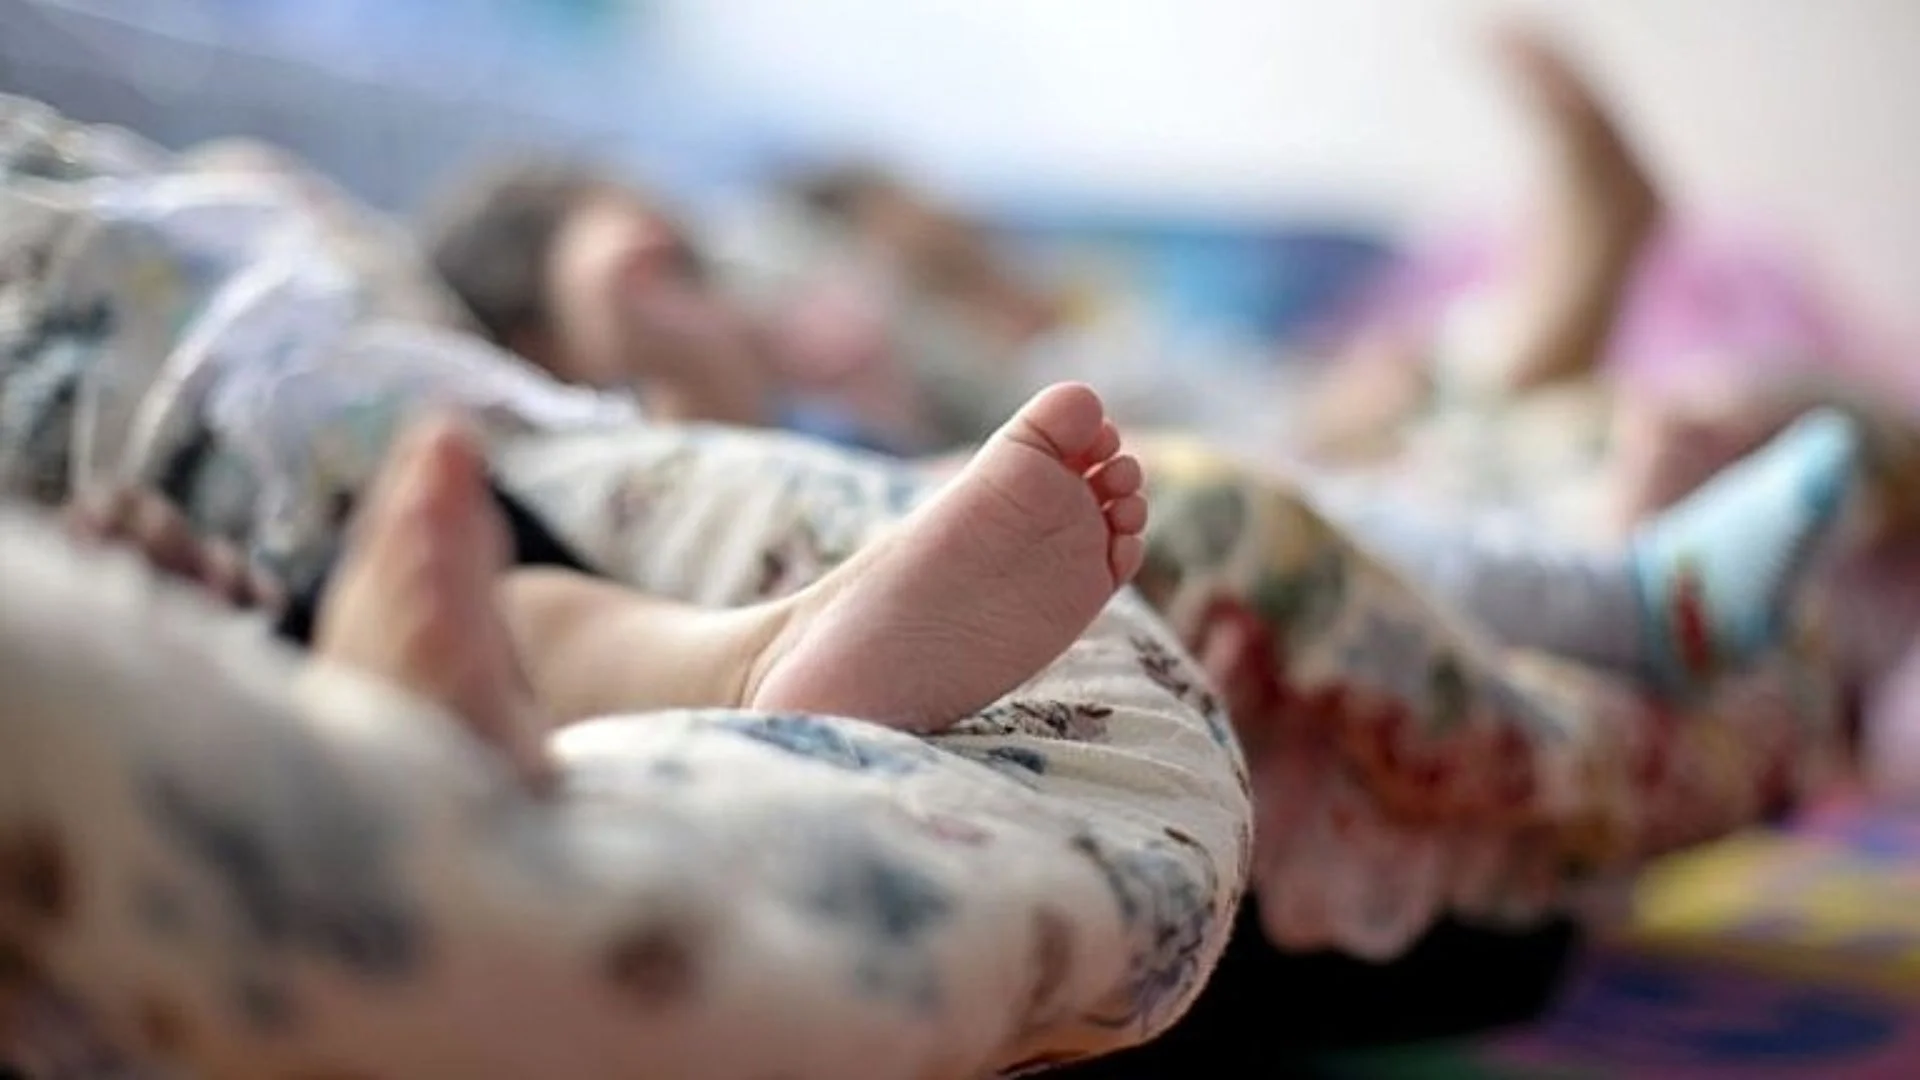 Pernambuco registra mais de 90 crianças e bebês em fila de espera nas UTIs pediátricas e neonatais.